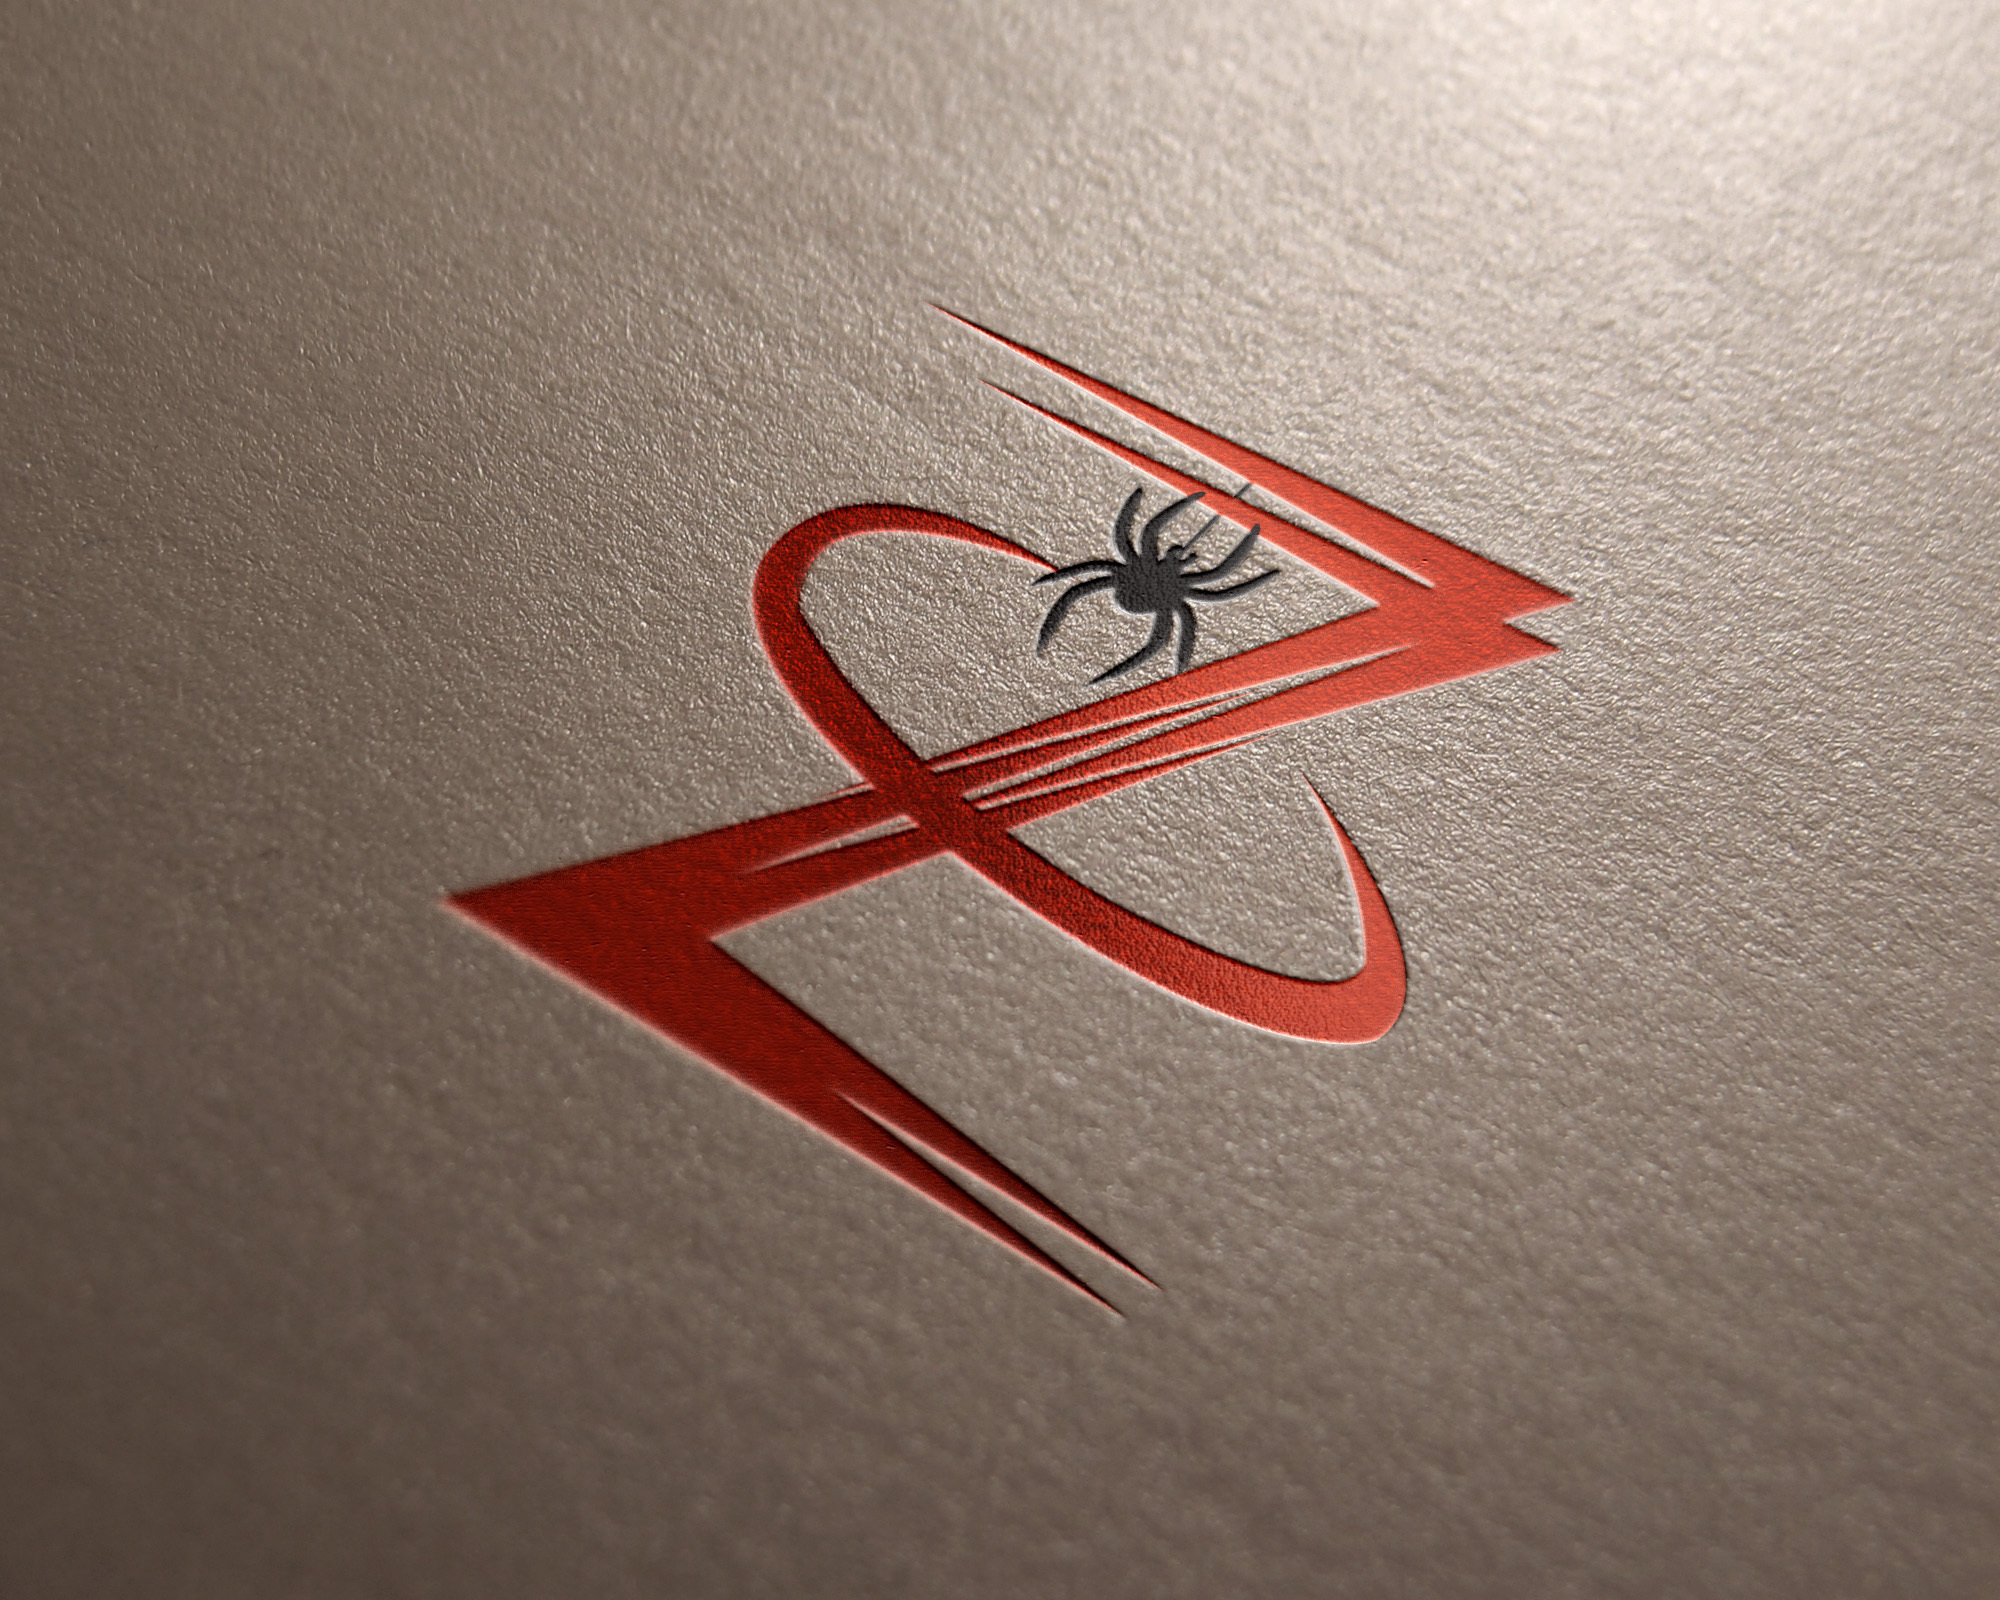 带蜘蛛logo的男装品牌图片